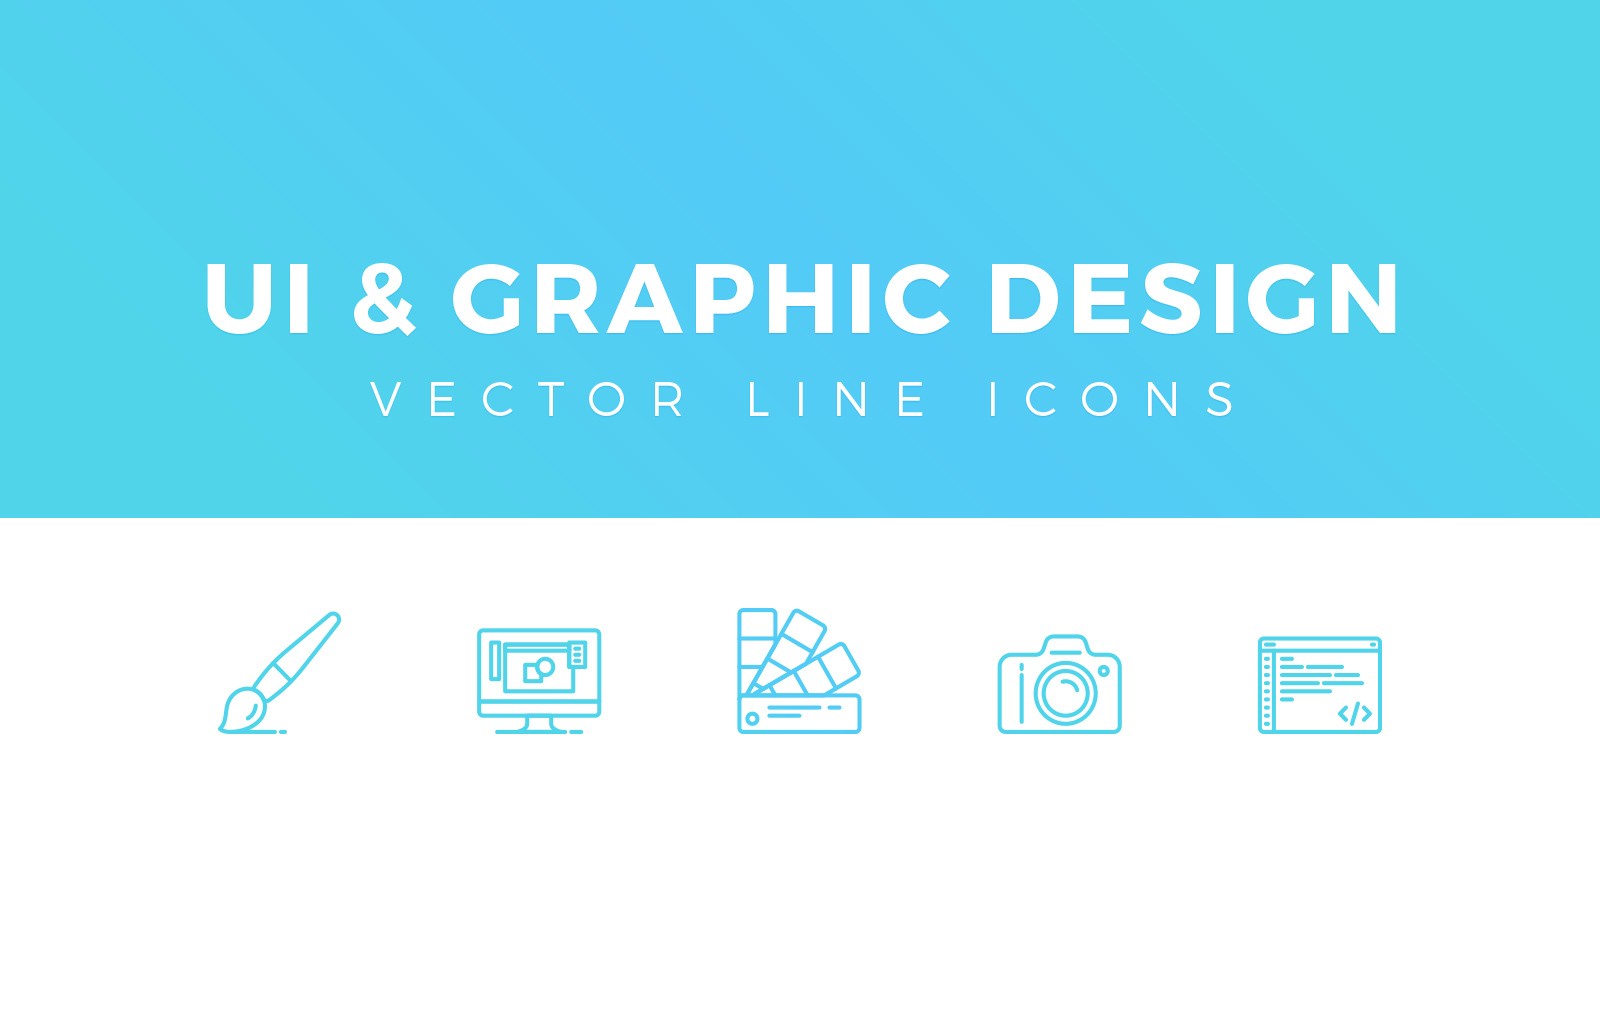 设计相关简洁线框图标 UI & Graphic Design Line Icons插图